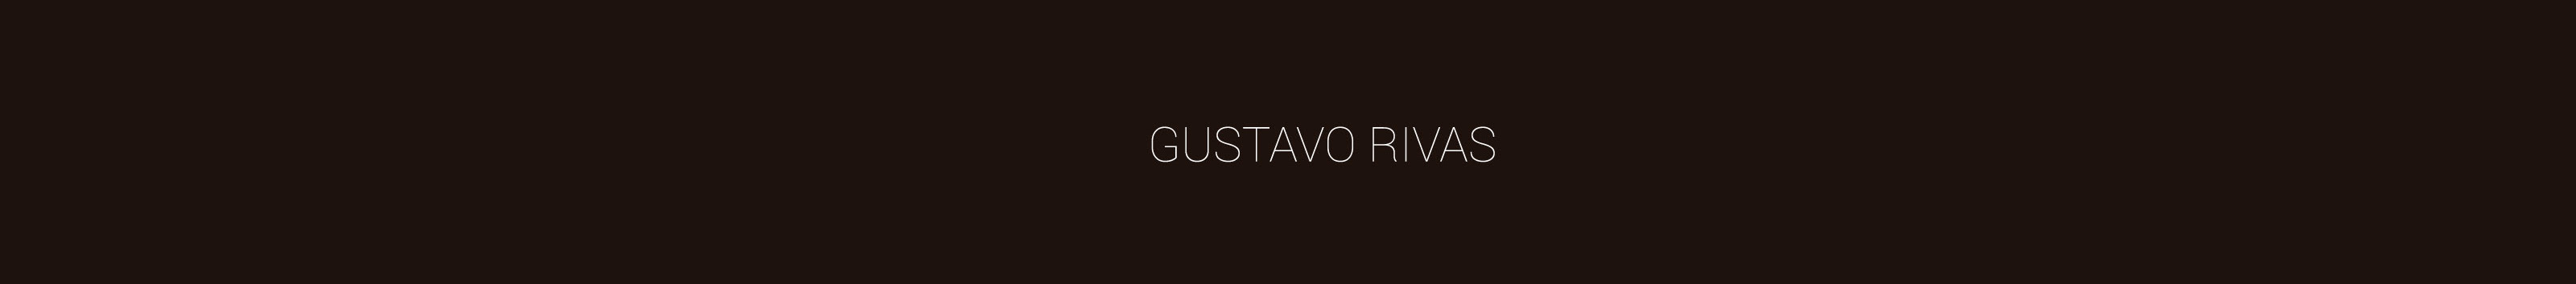 Gustavo Rivas's profile banner